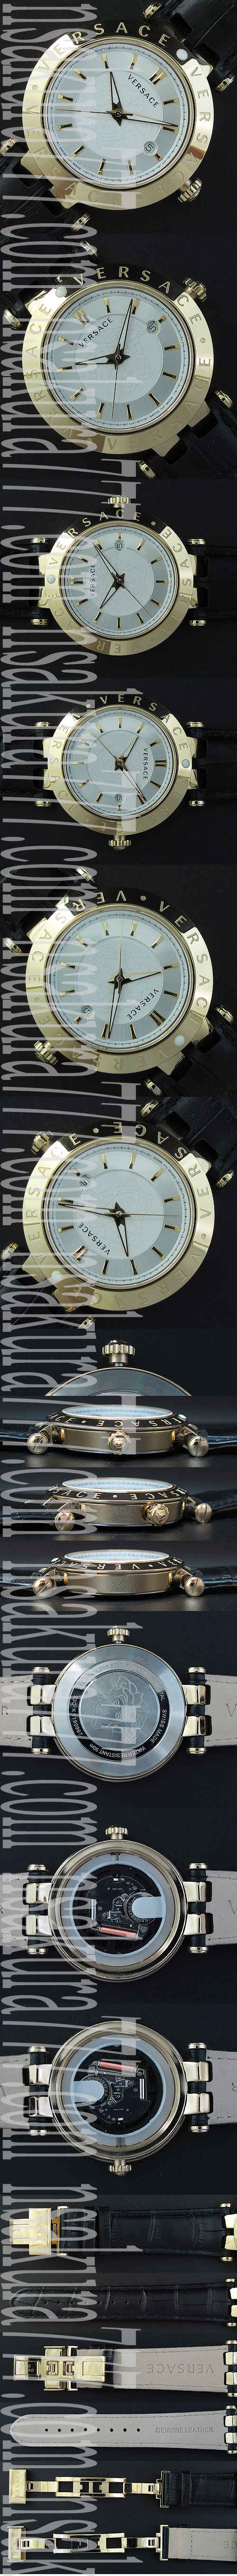 レプリカ時計ヴェルサーチ，クォーツムーブメント搭載 - ウインドウを閉じる